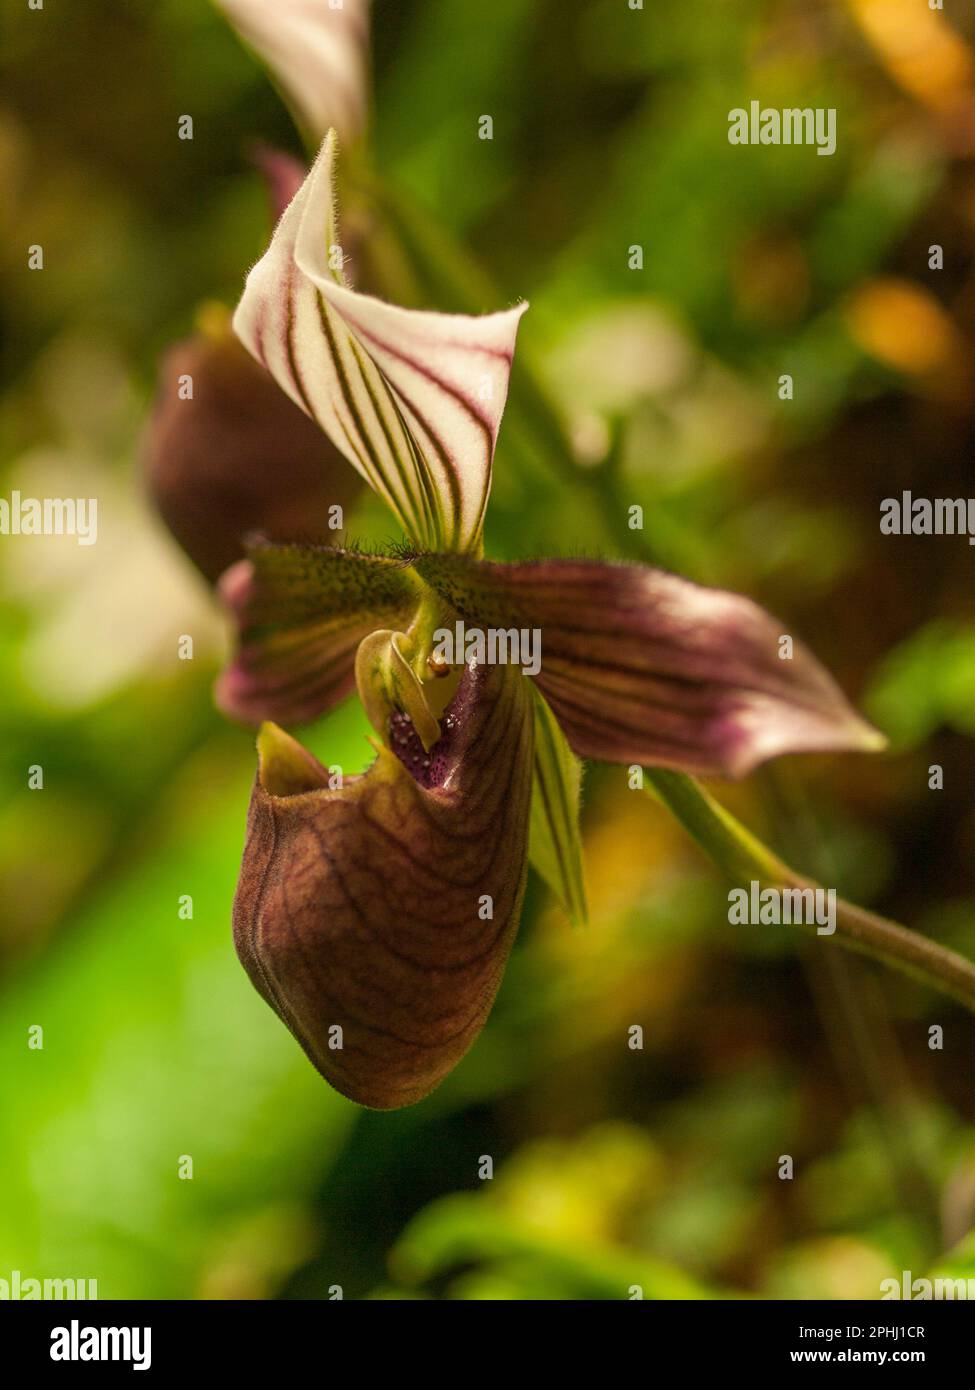 Paphiopedilum purpuratum - Venus slipper orchid Stock Photo